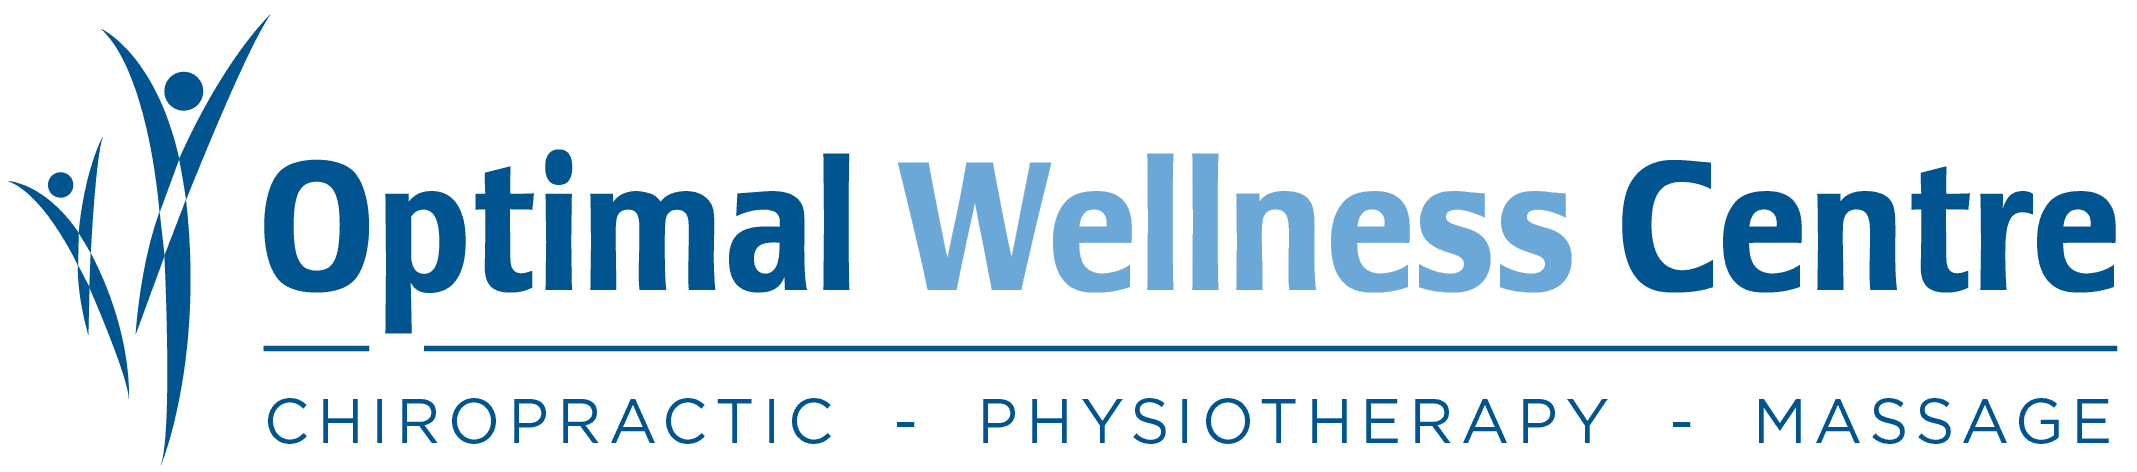 Optimal Wellness Centre logo